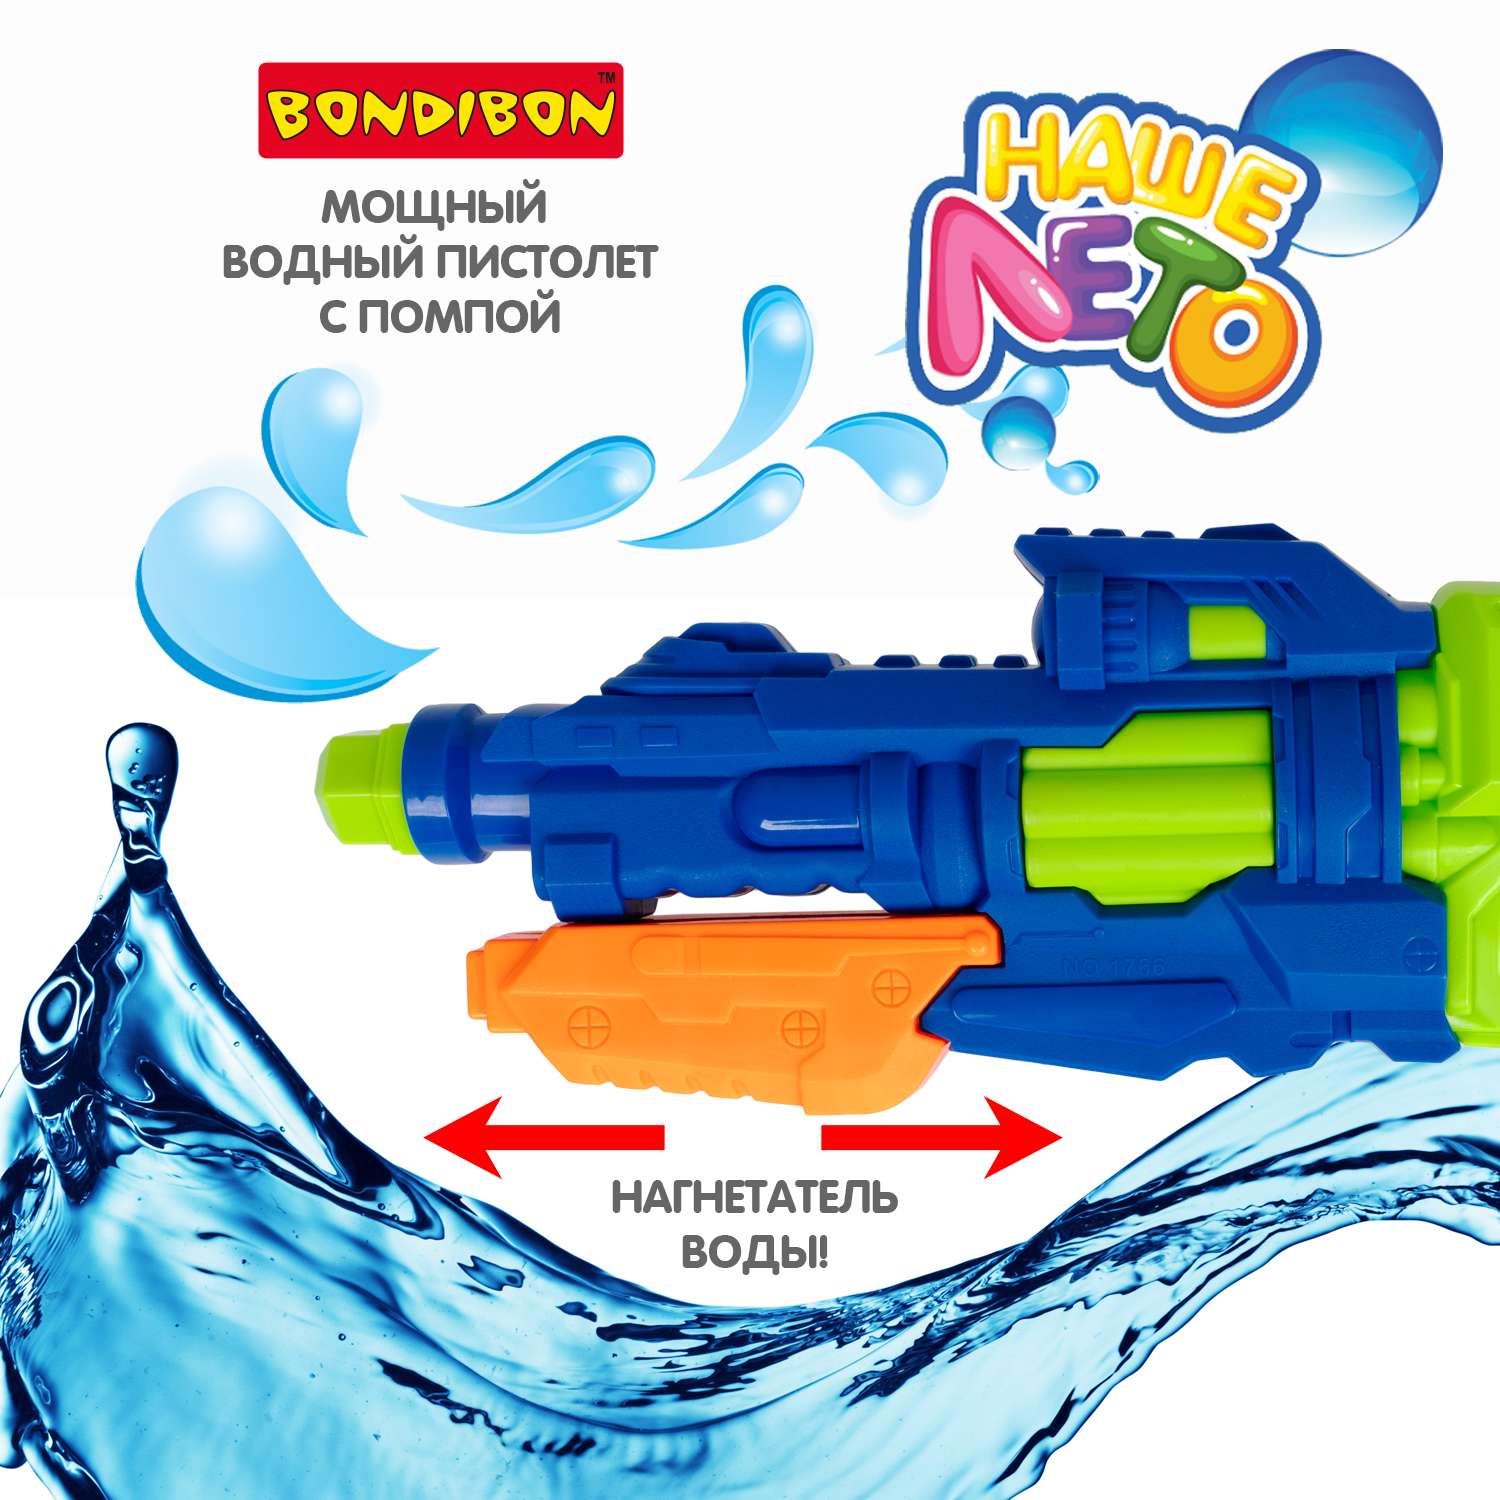 Водный пистолет с помпой BONDIBON бело-синий серия Наше Лето - фото 2